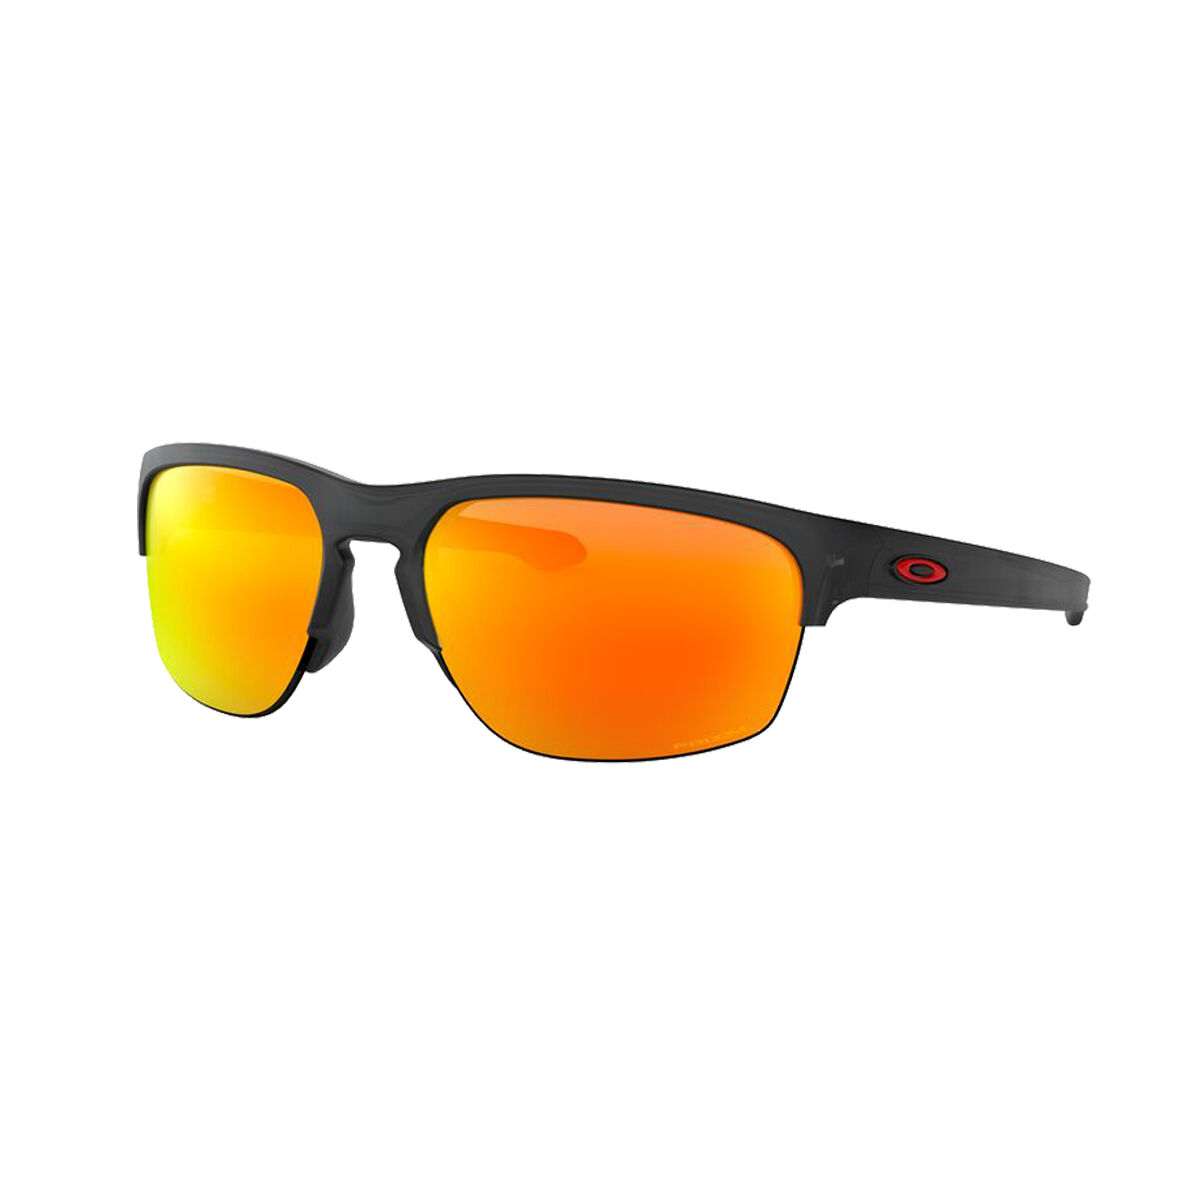 rebel sport oakley sunglasses